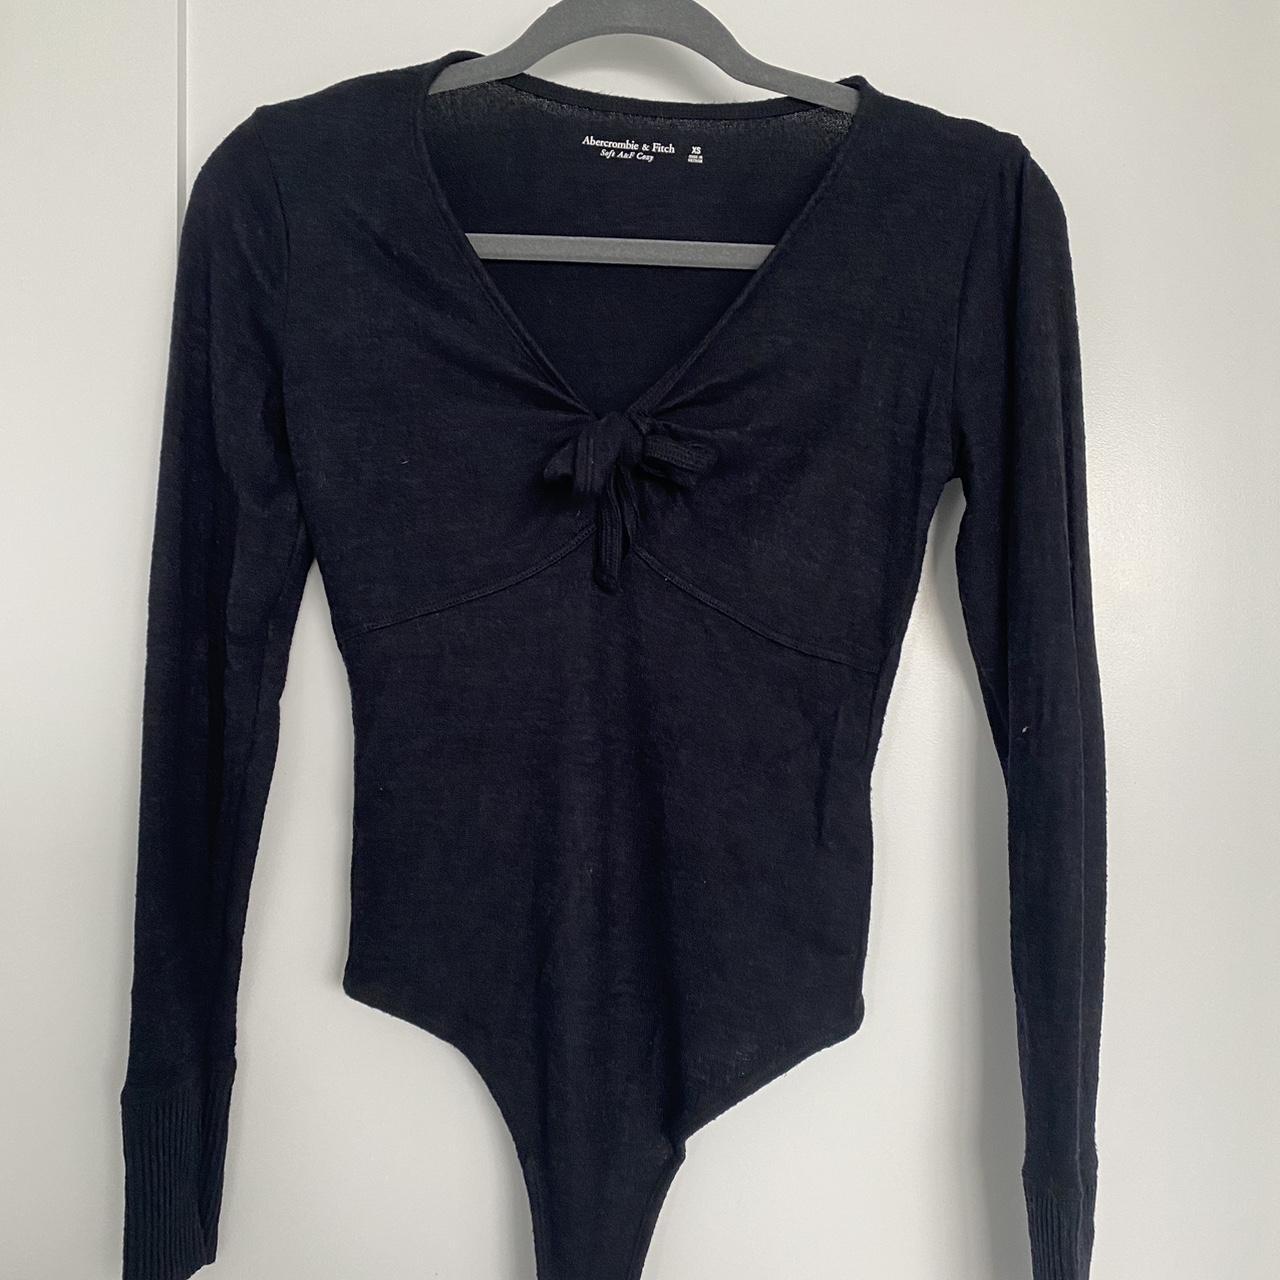 Abercrombie & Fitch Women's Black Bodysuit | Depop